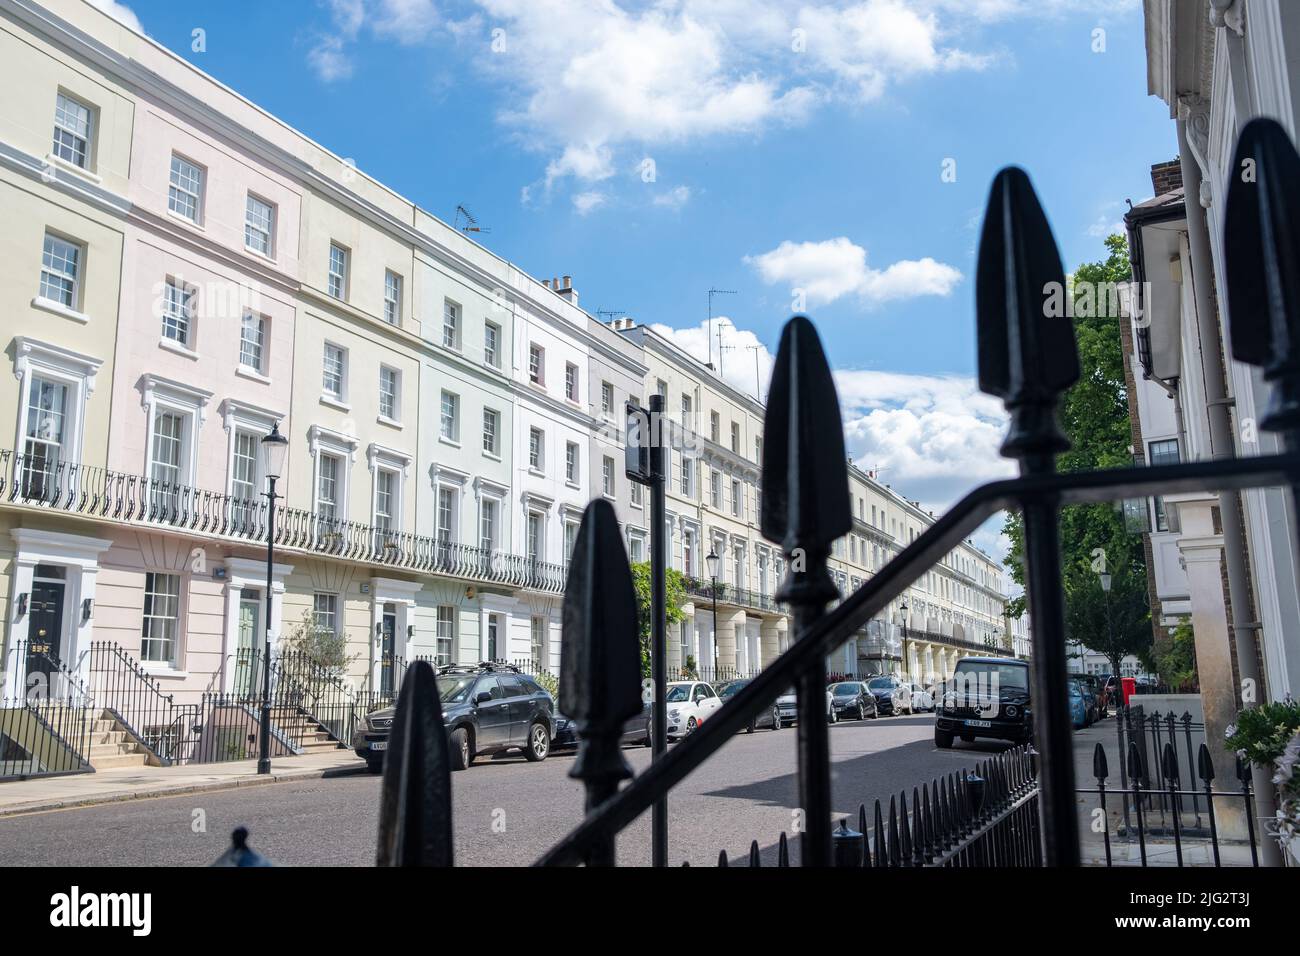 Calle de casas adosadas de lujo en la zona de Notting Hill al oeste de Londres Foto de stock